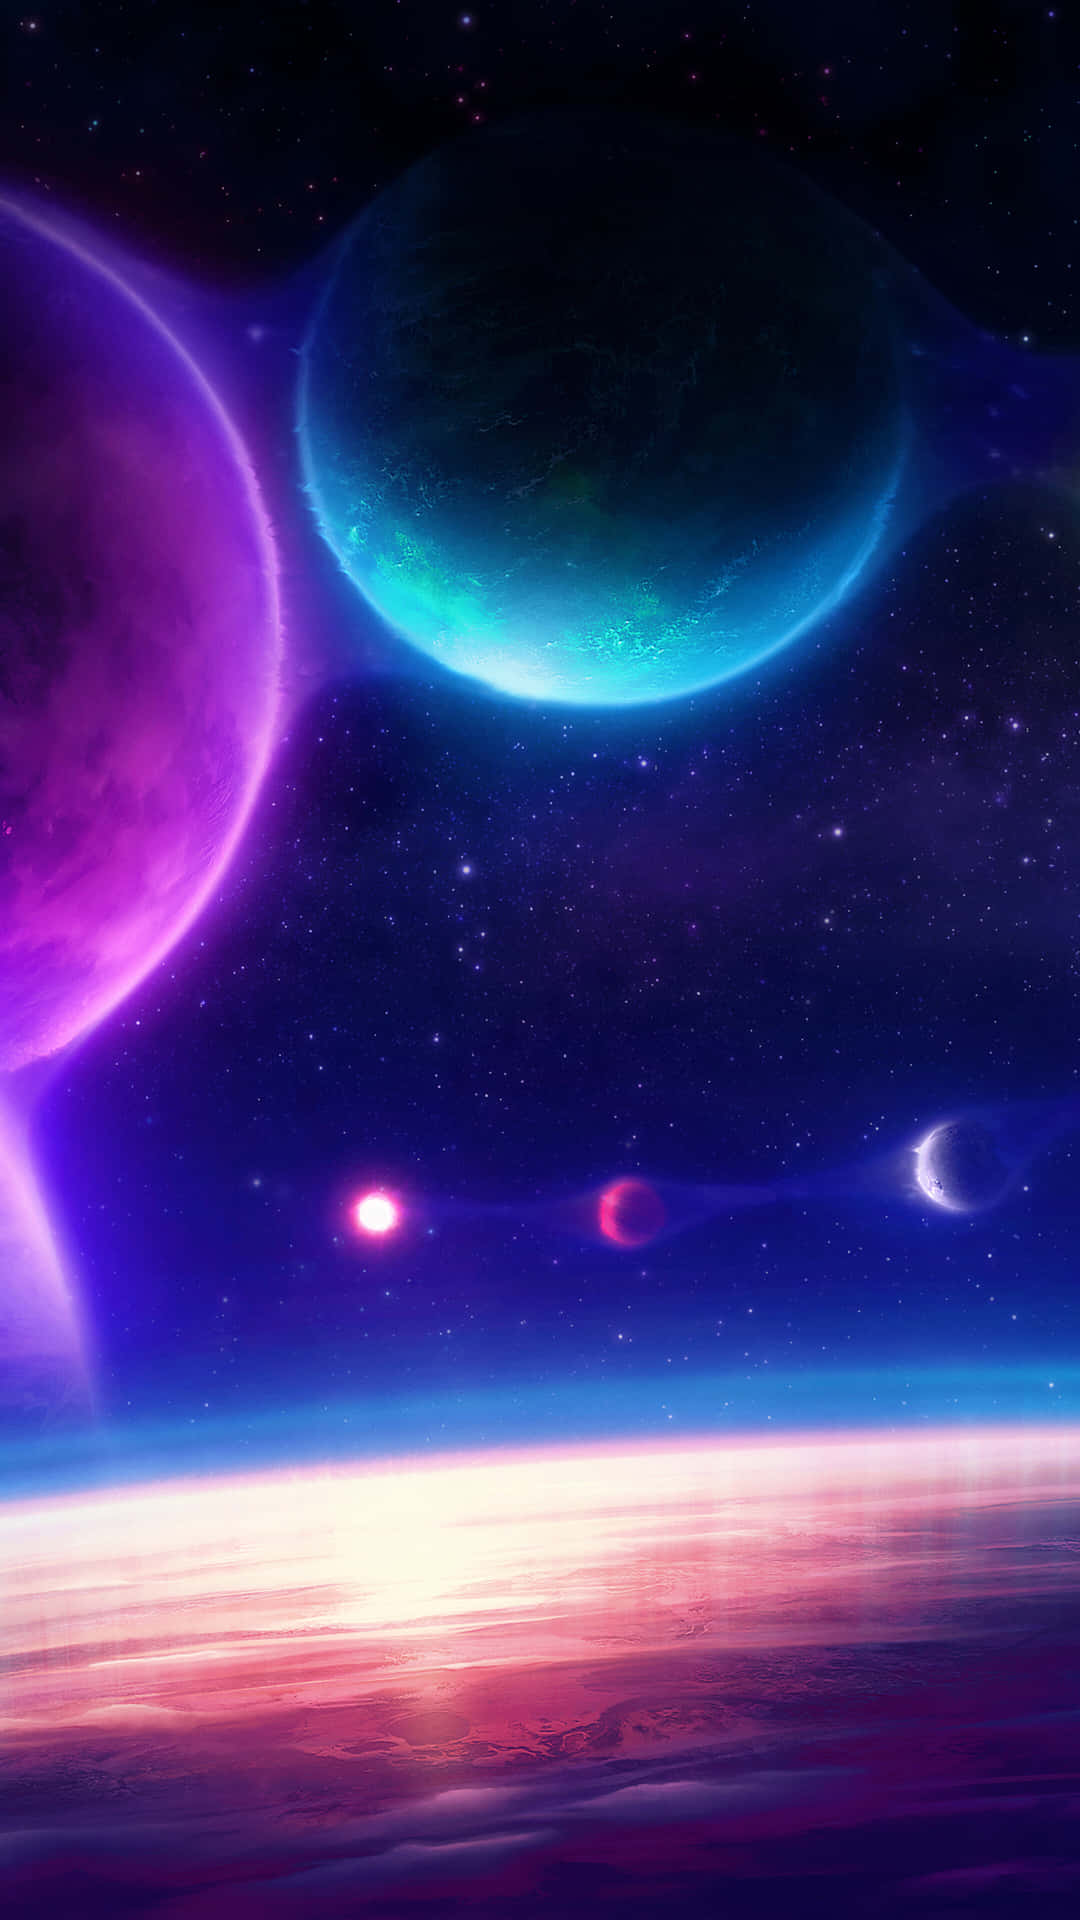 Unaimagen Colorida De Planetas En El Espacio